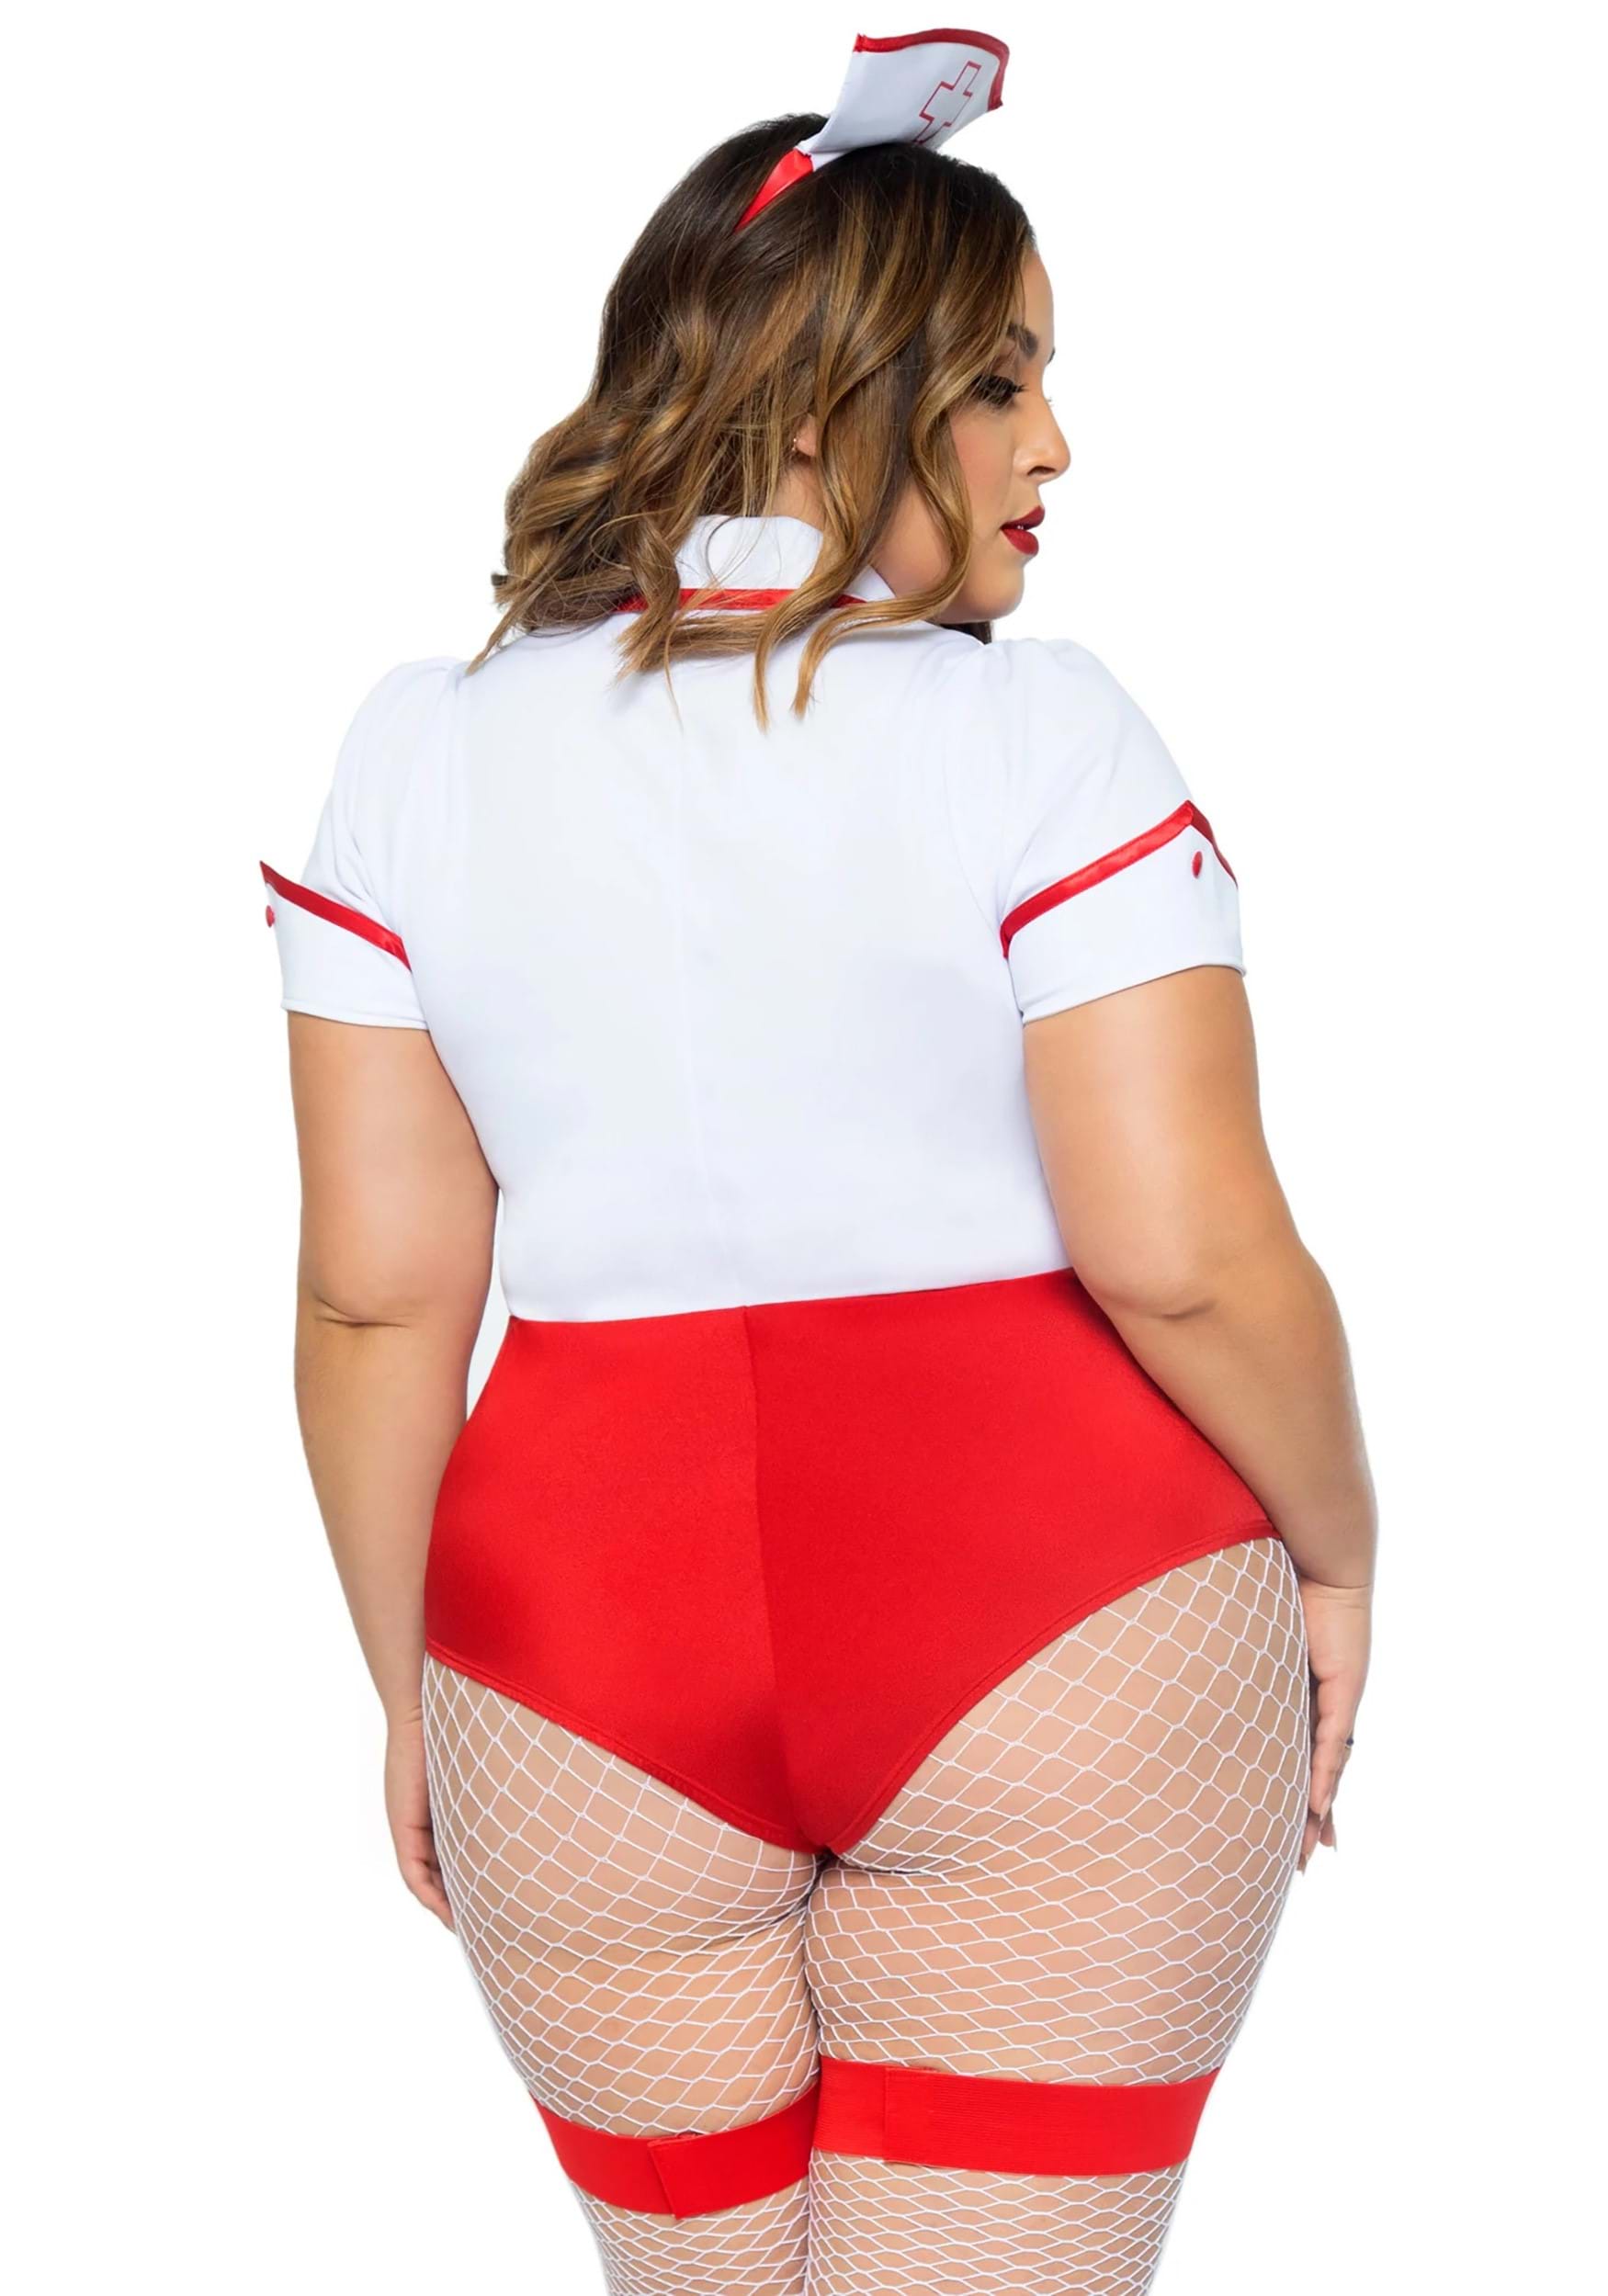 Hospital Risque Nurse Costume, Sexy Nurse Costume 